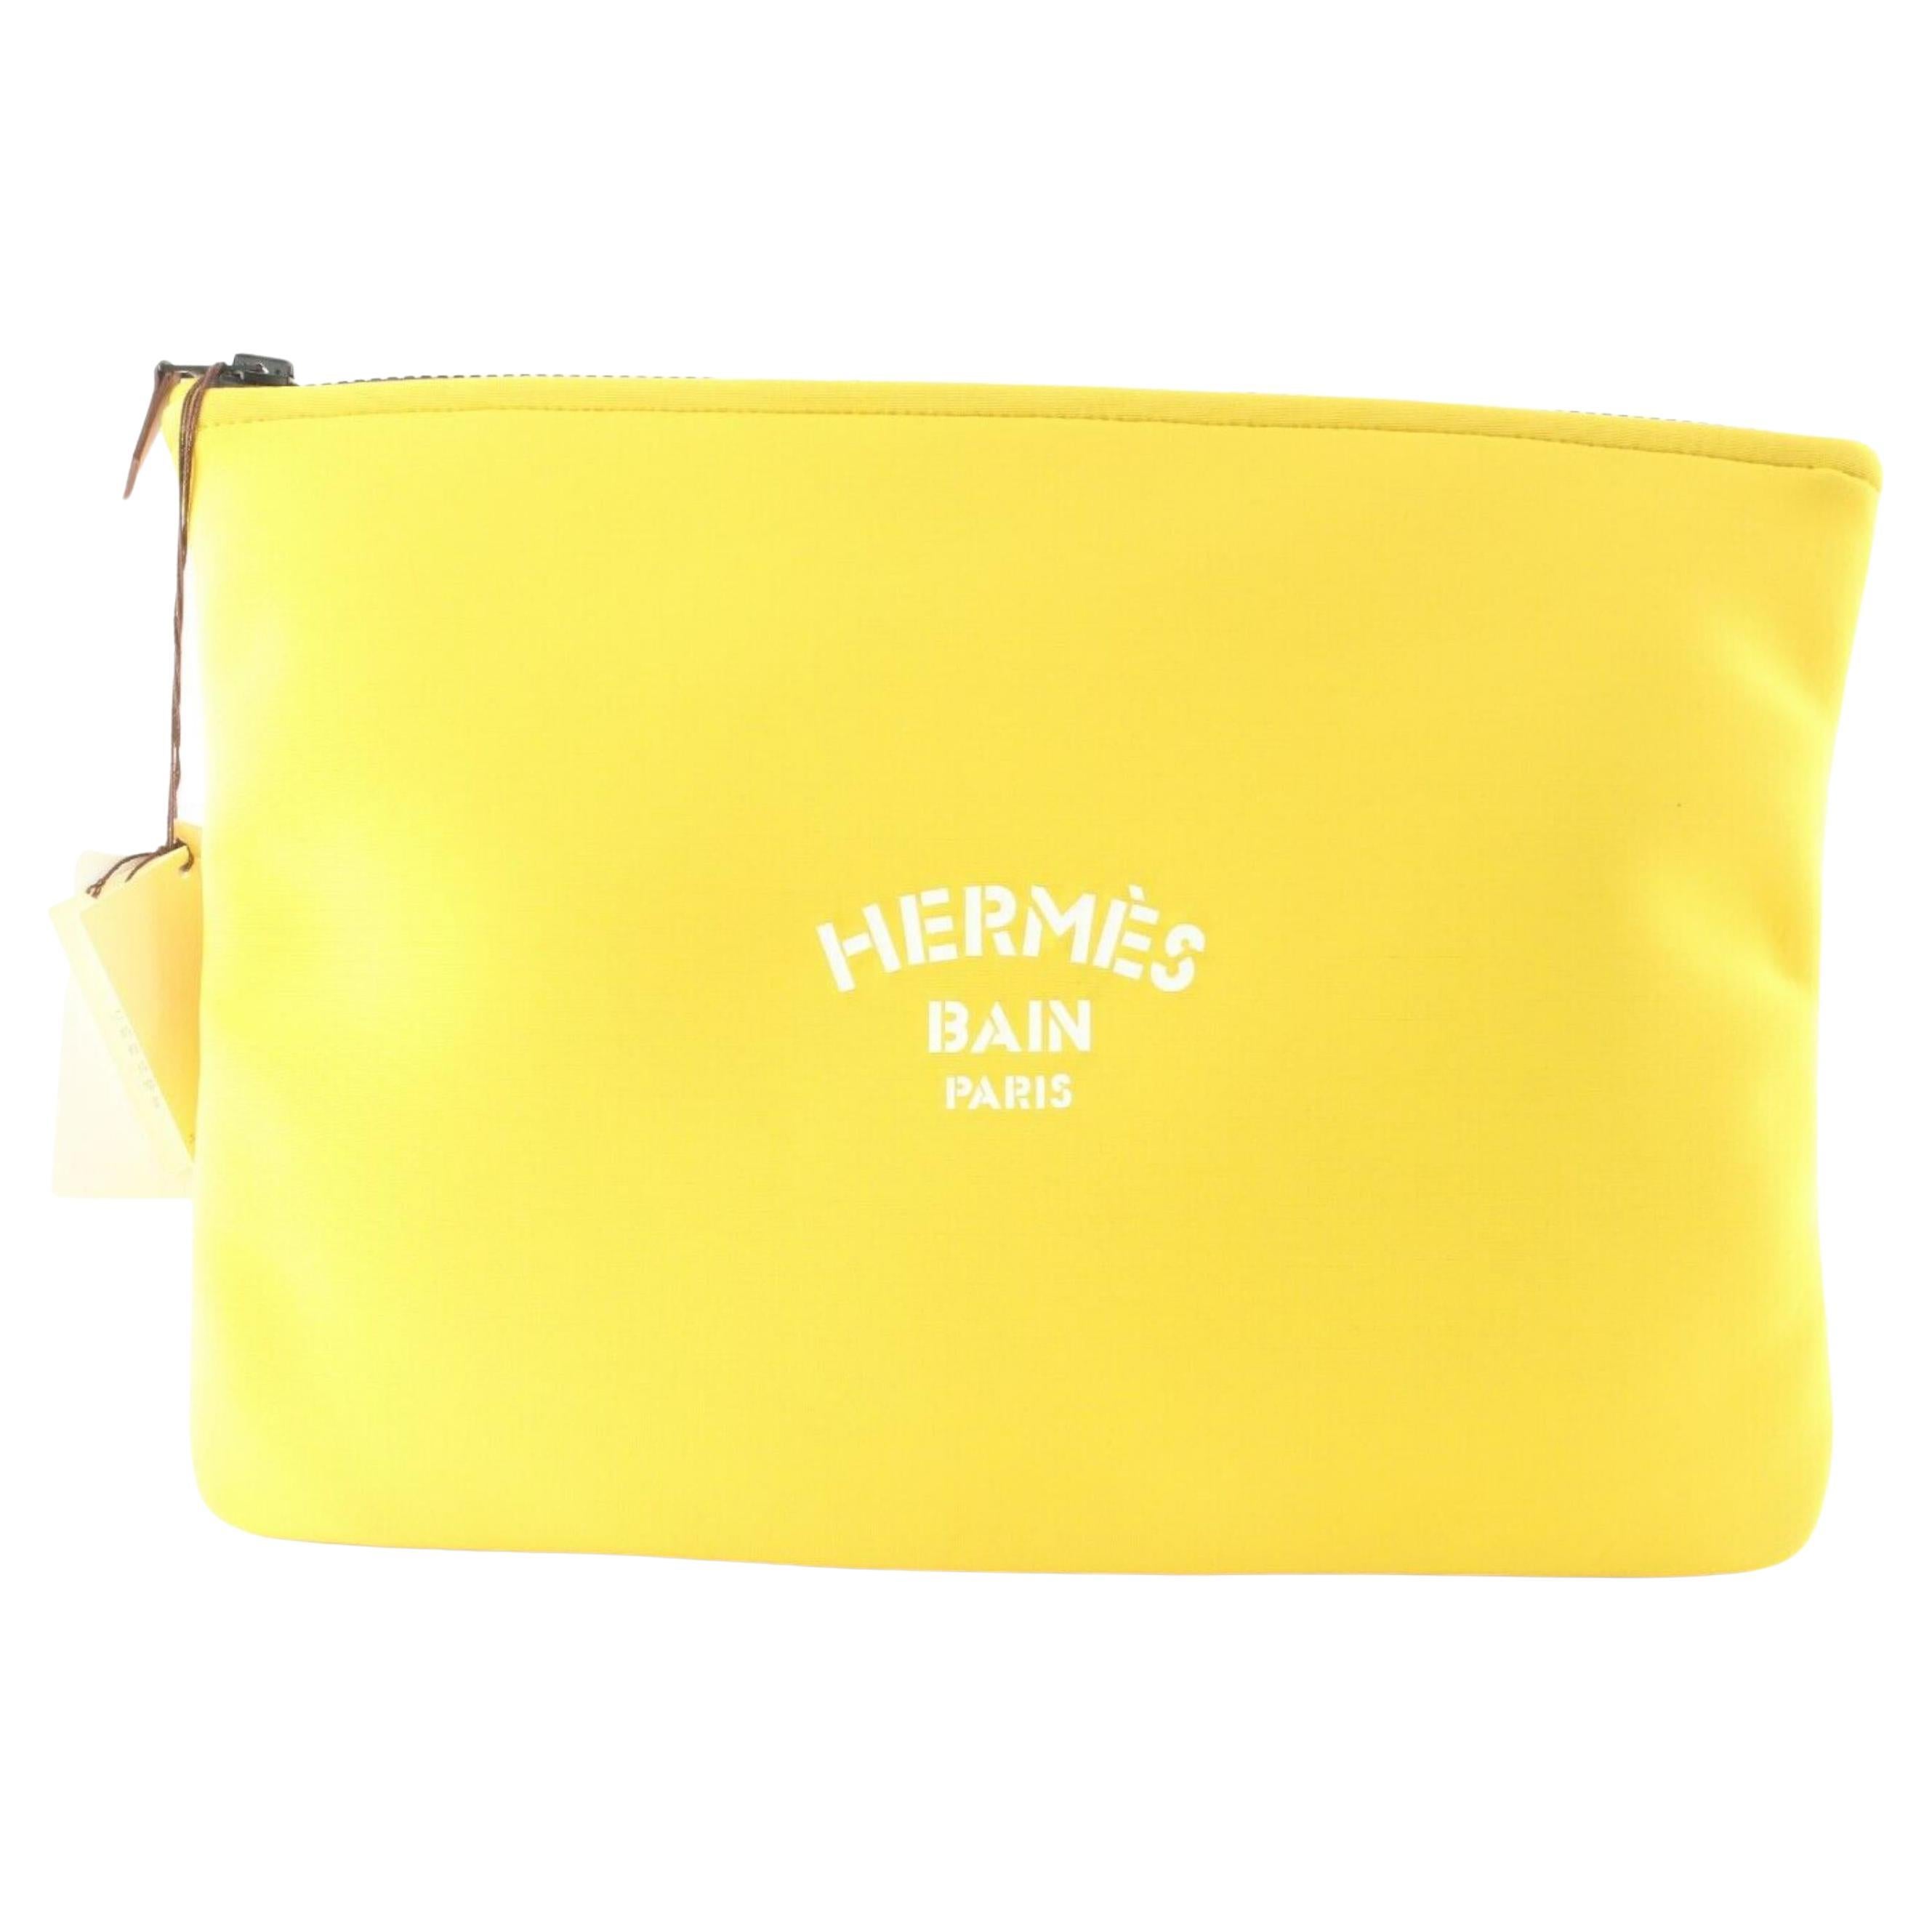 Pochette Hermès jaune à sangle néo-bain avec fermeture éclair 1H0509